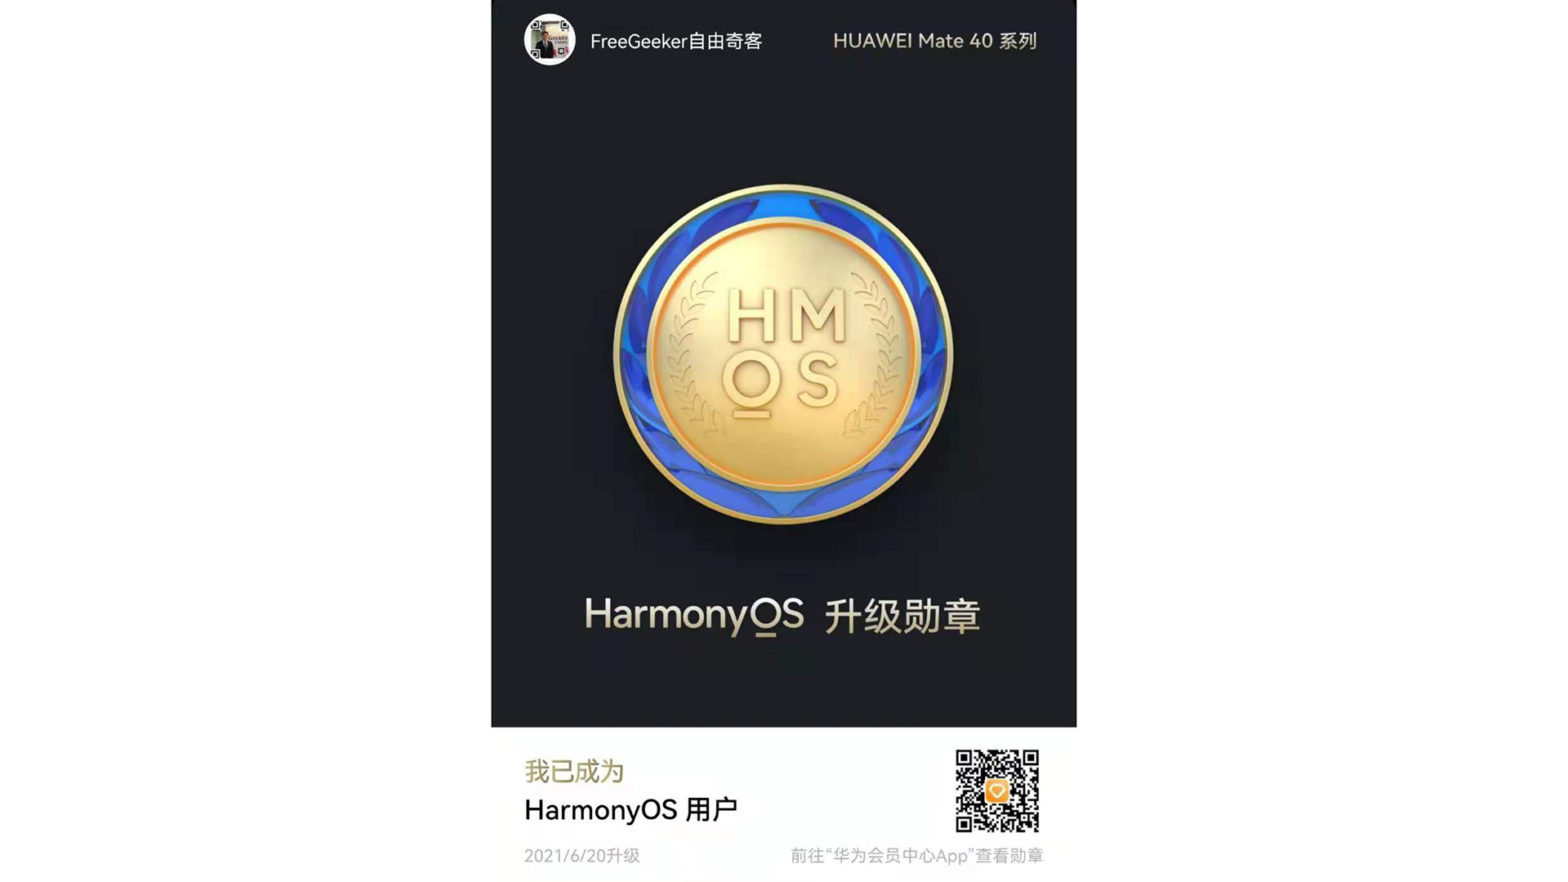 华为Mate40 Pro+升级鸿蒙系统Harmony OS2.0详细教程 已验证原谷歌GMS使用一切正常